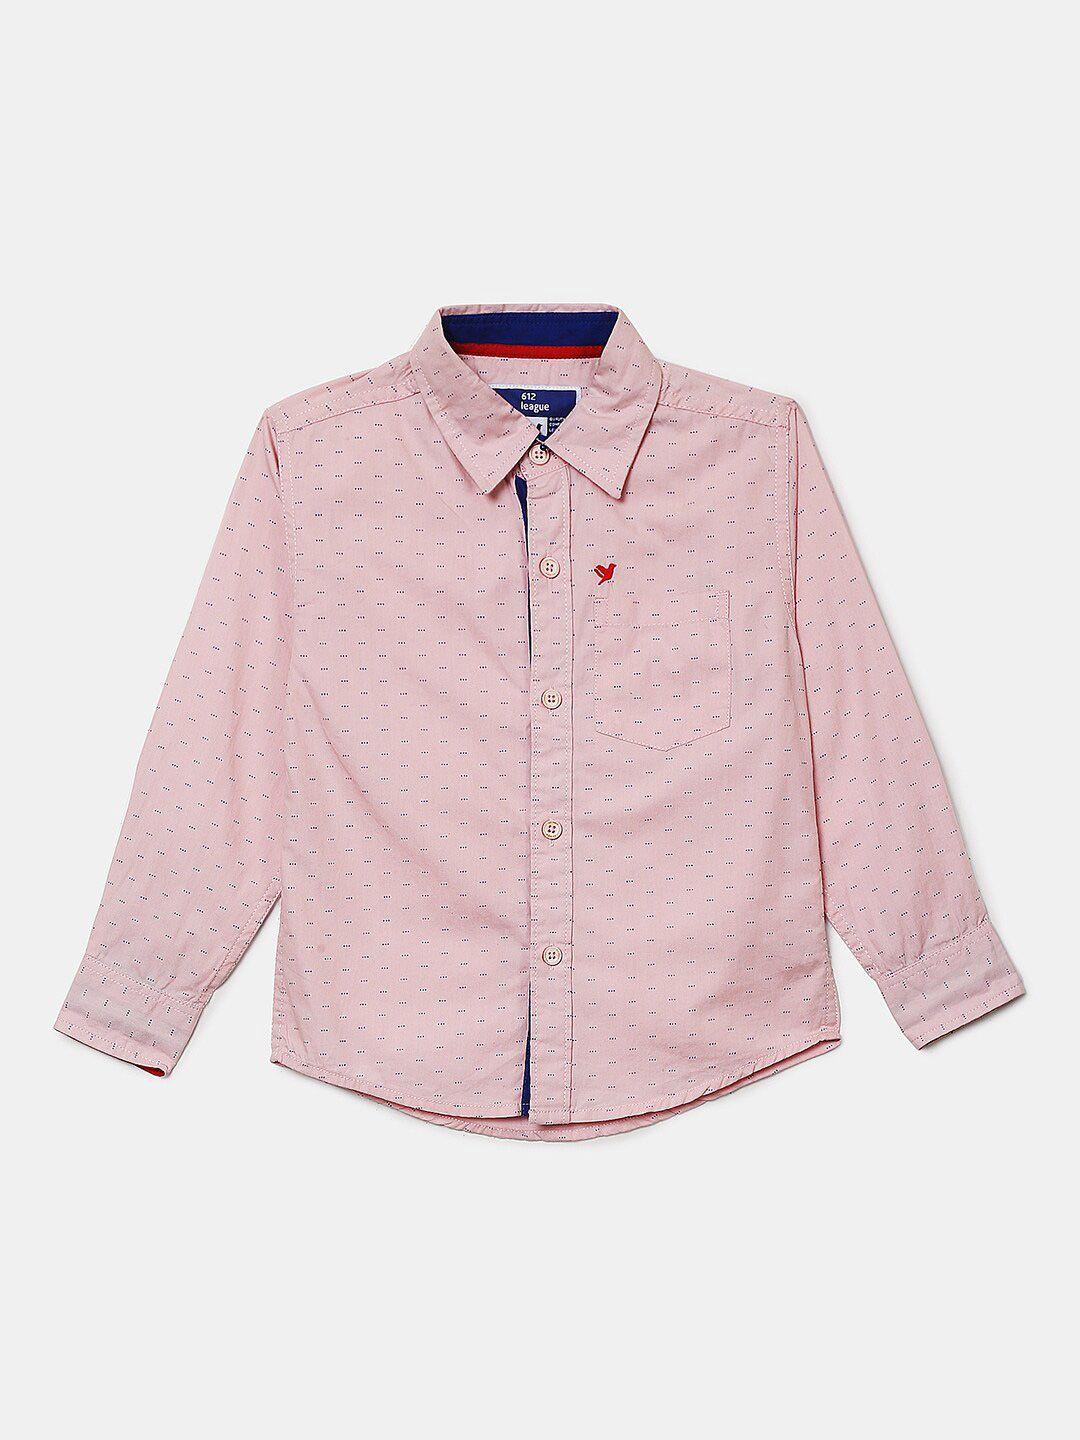 v-mart boys pink printed casual shirt